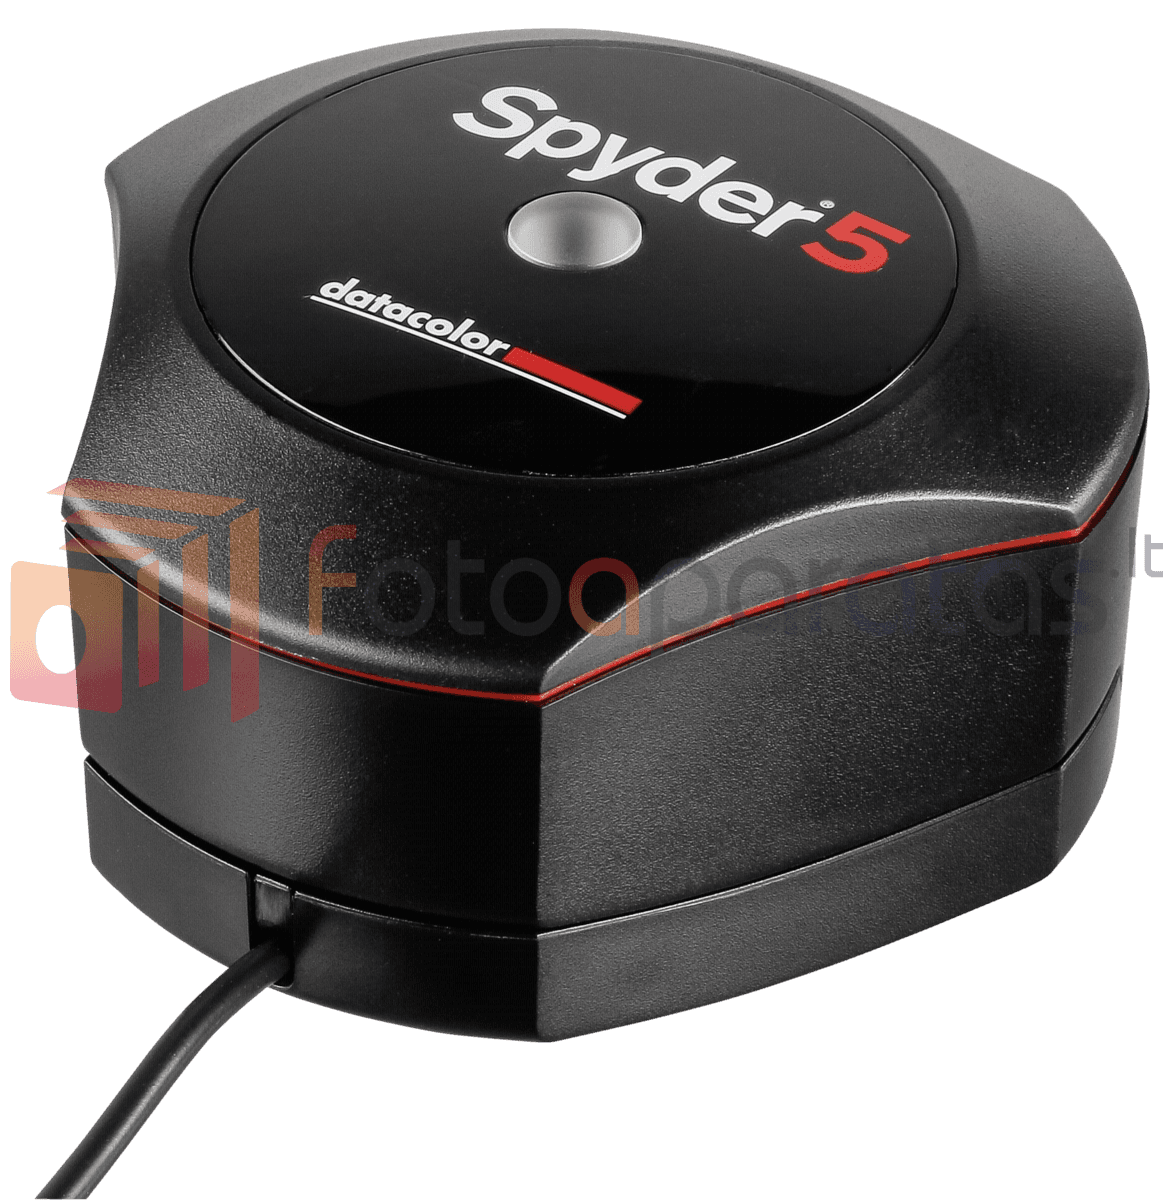 Spyder 4 Datacolor Download